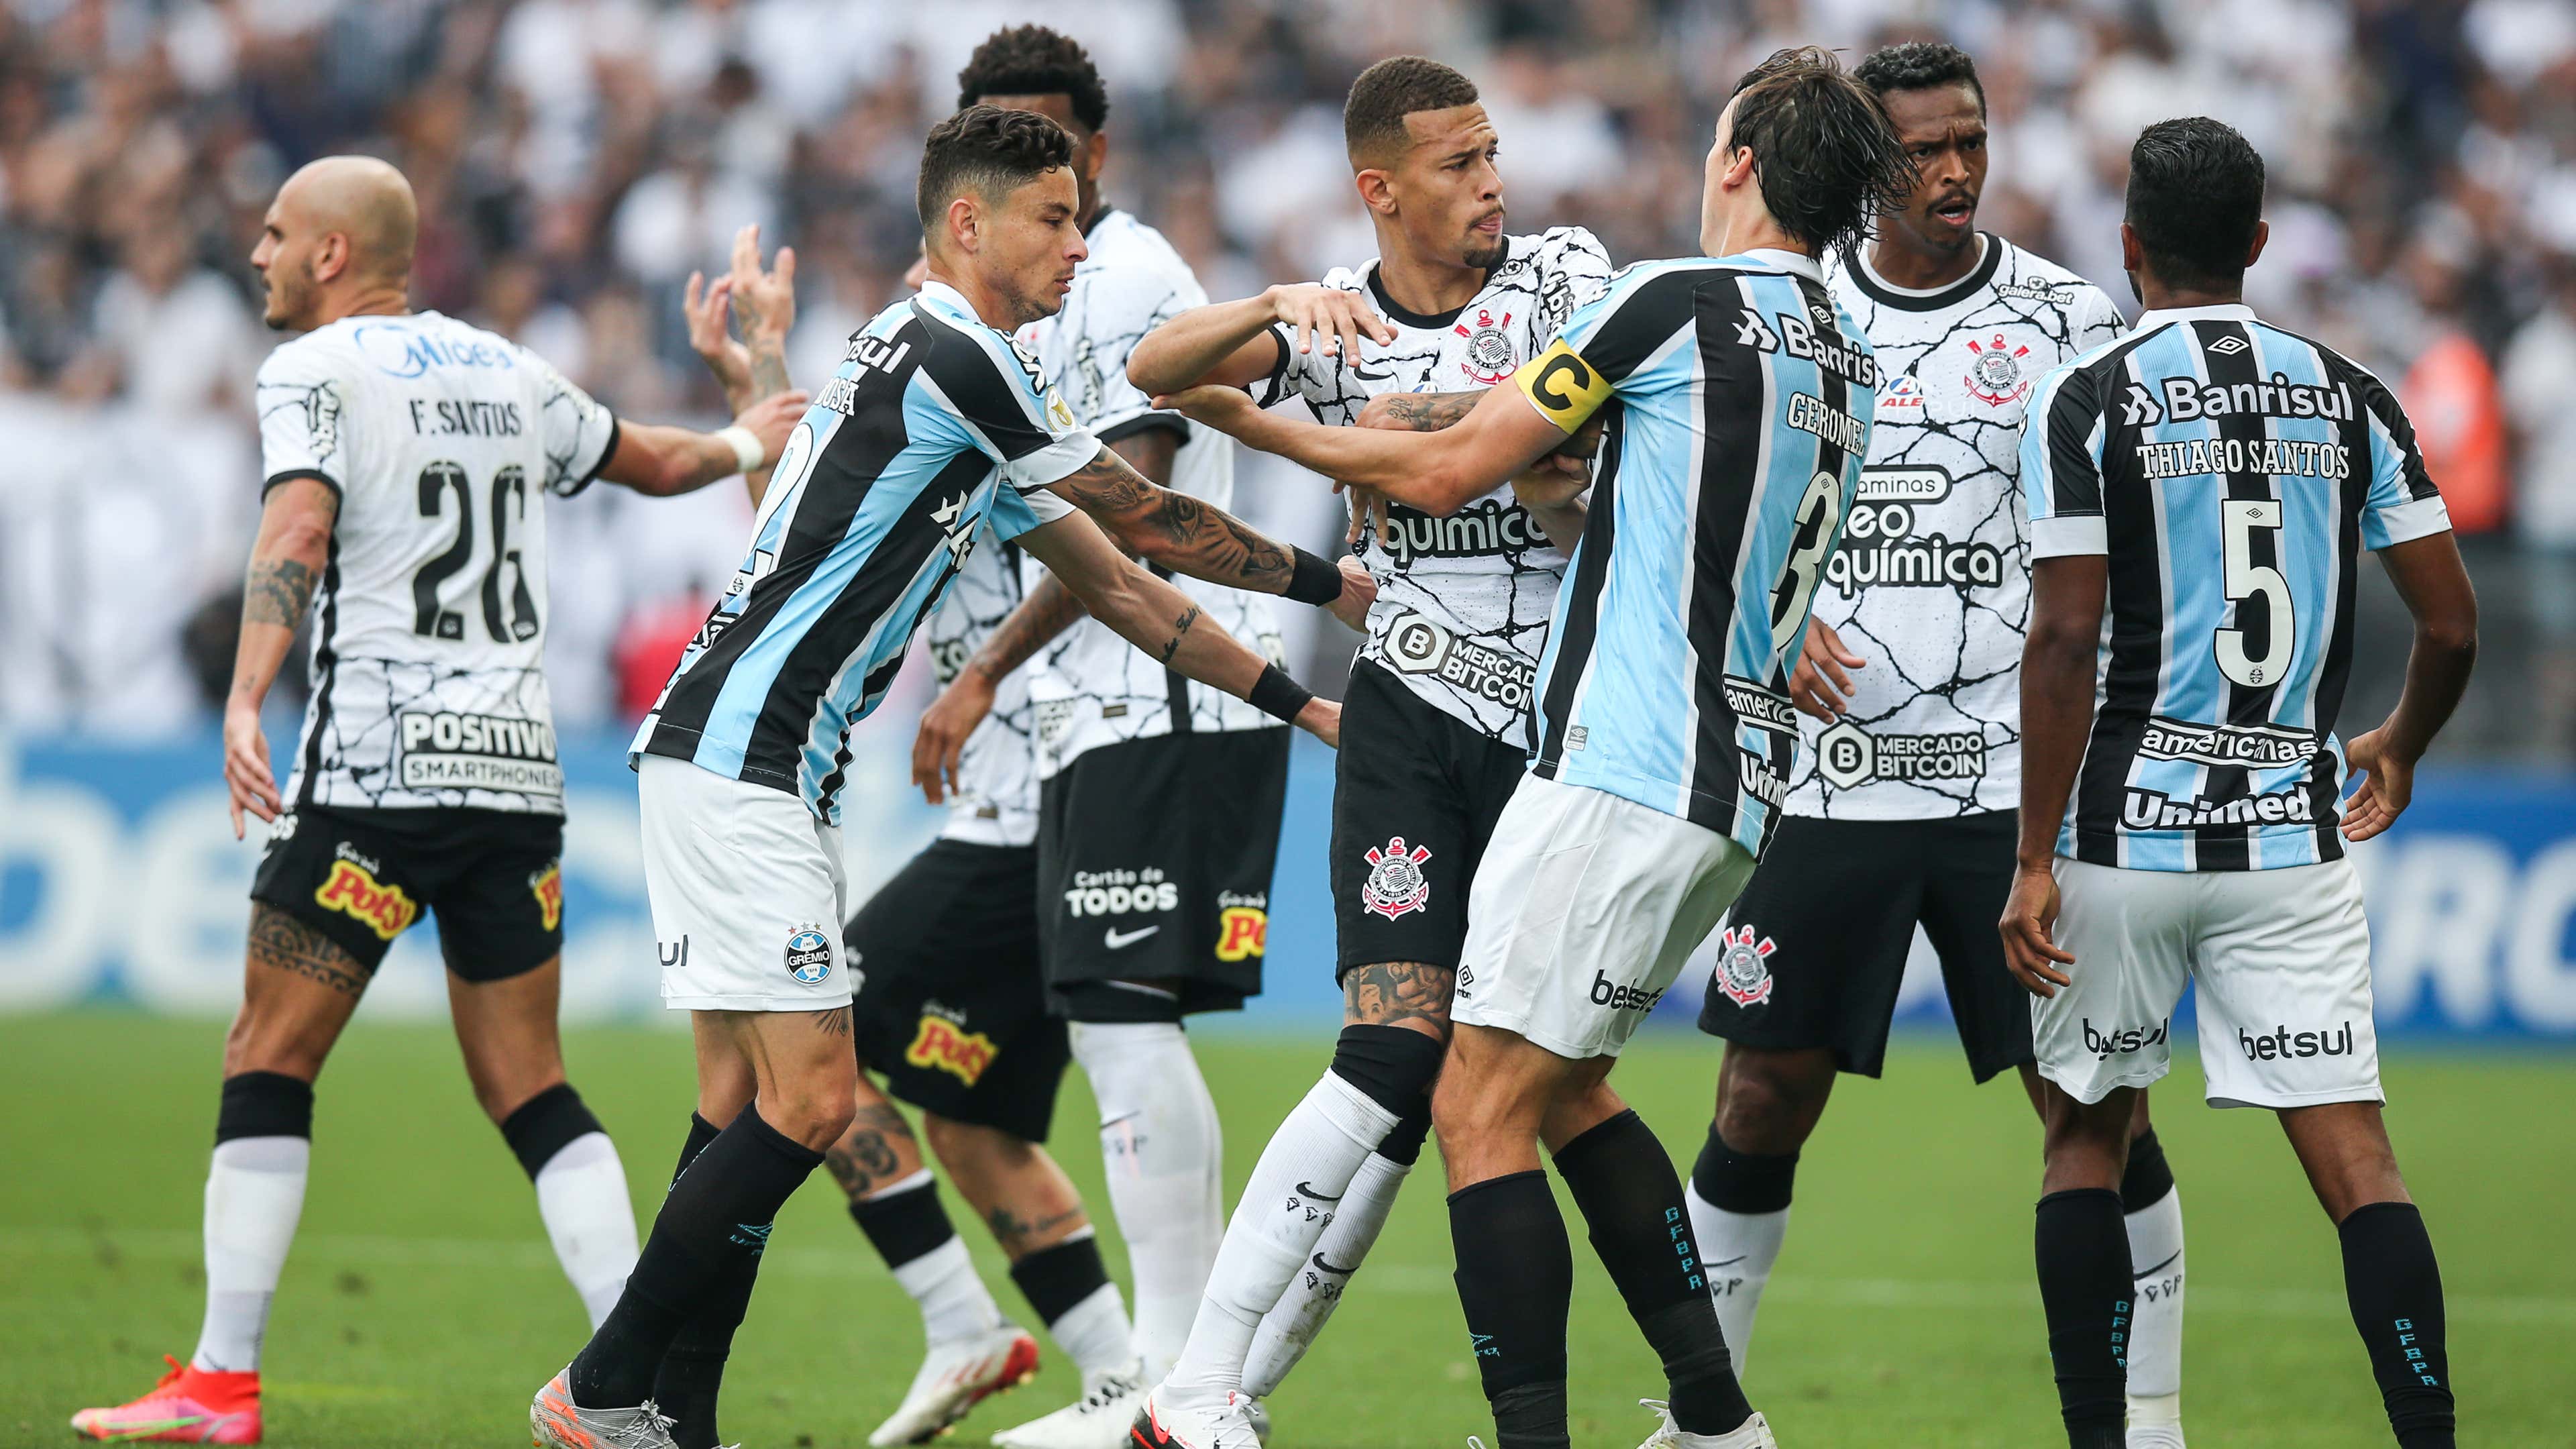 Brasileirão Série A: Grêmio x São Paulo; onde assistir de graça e